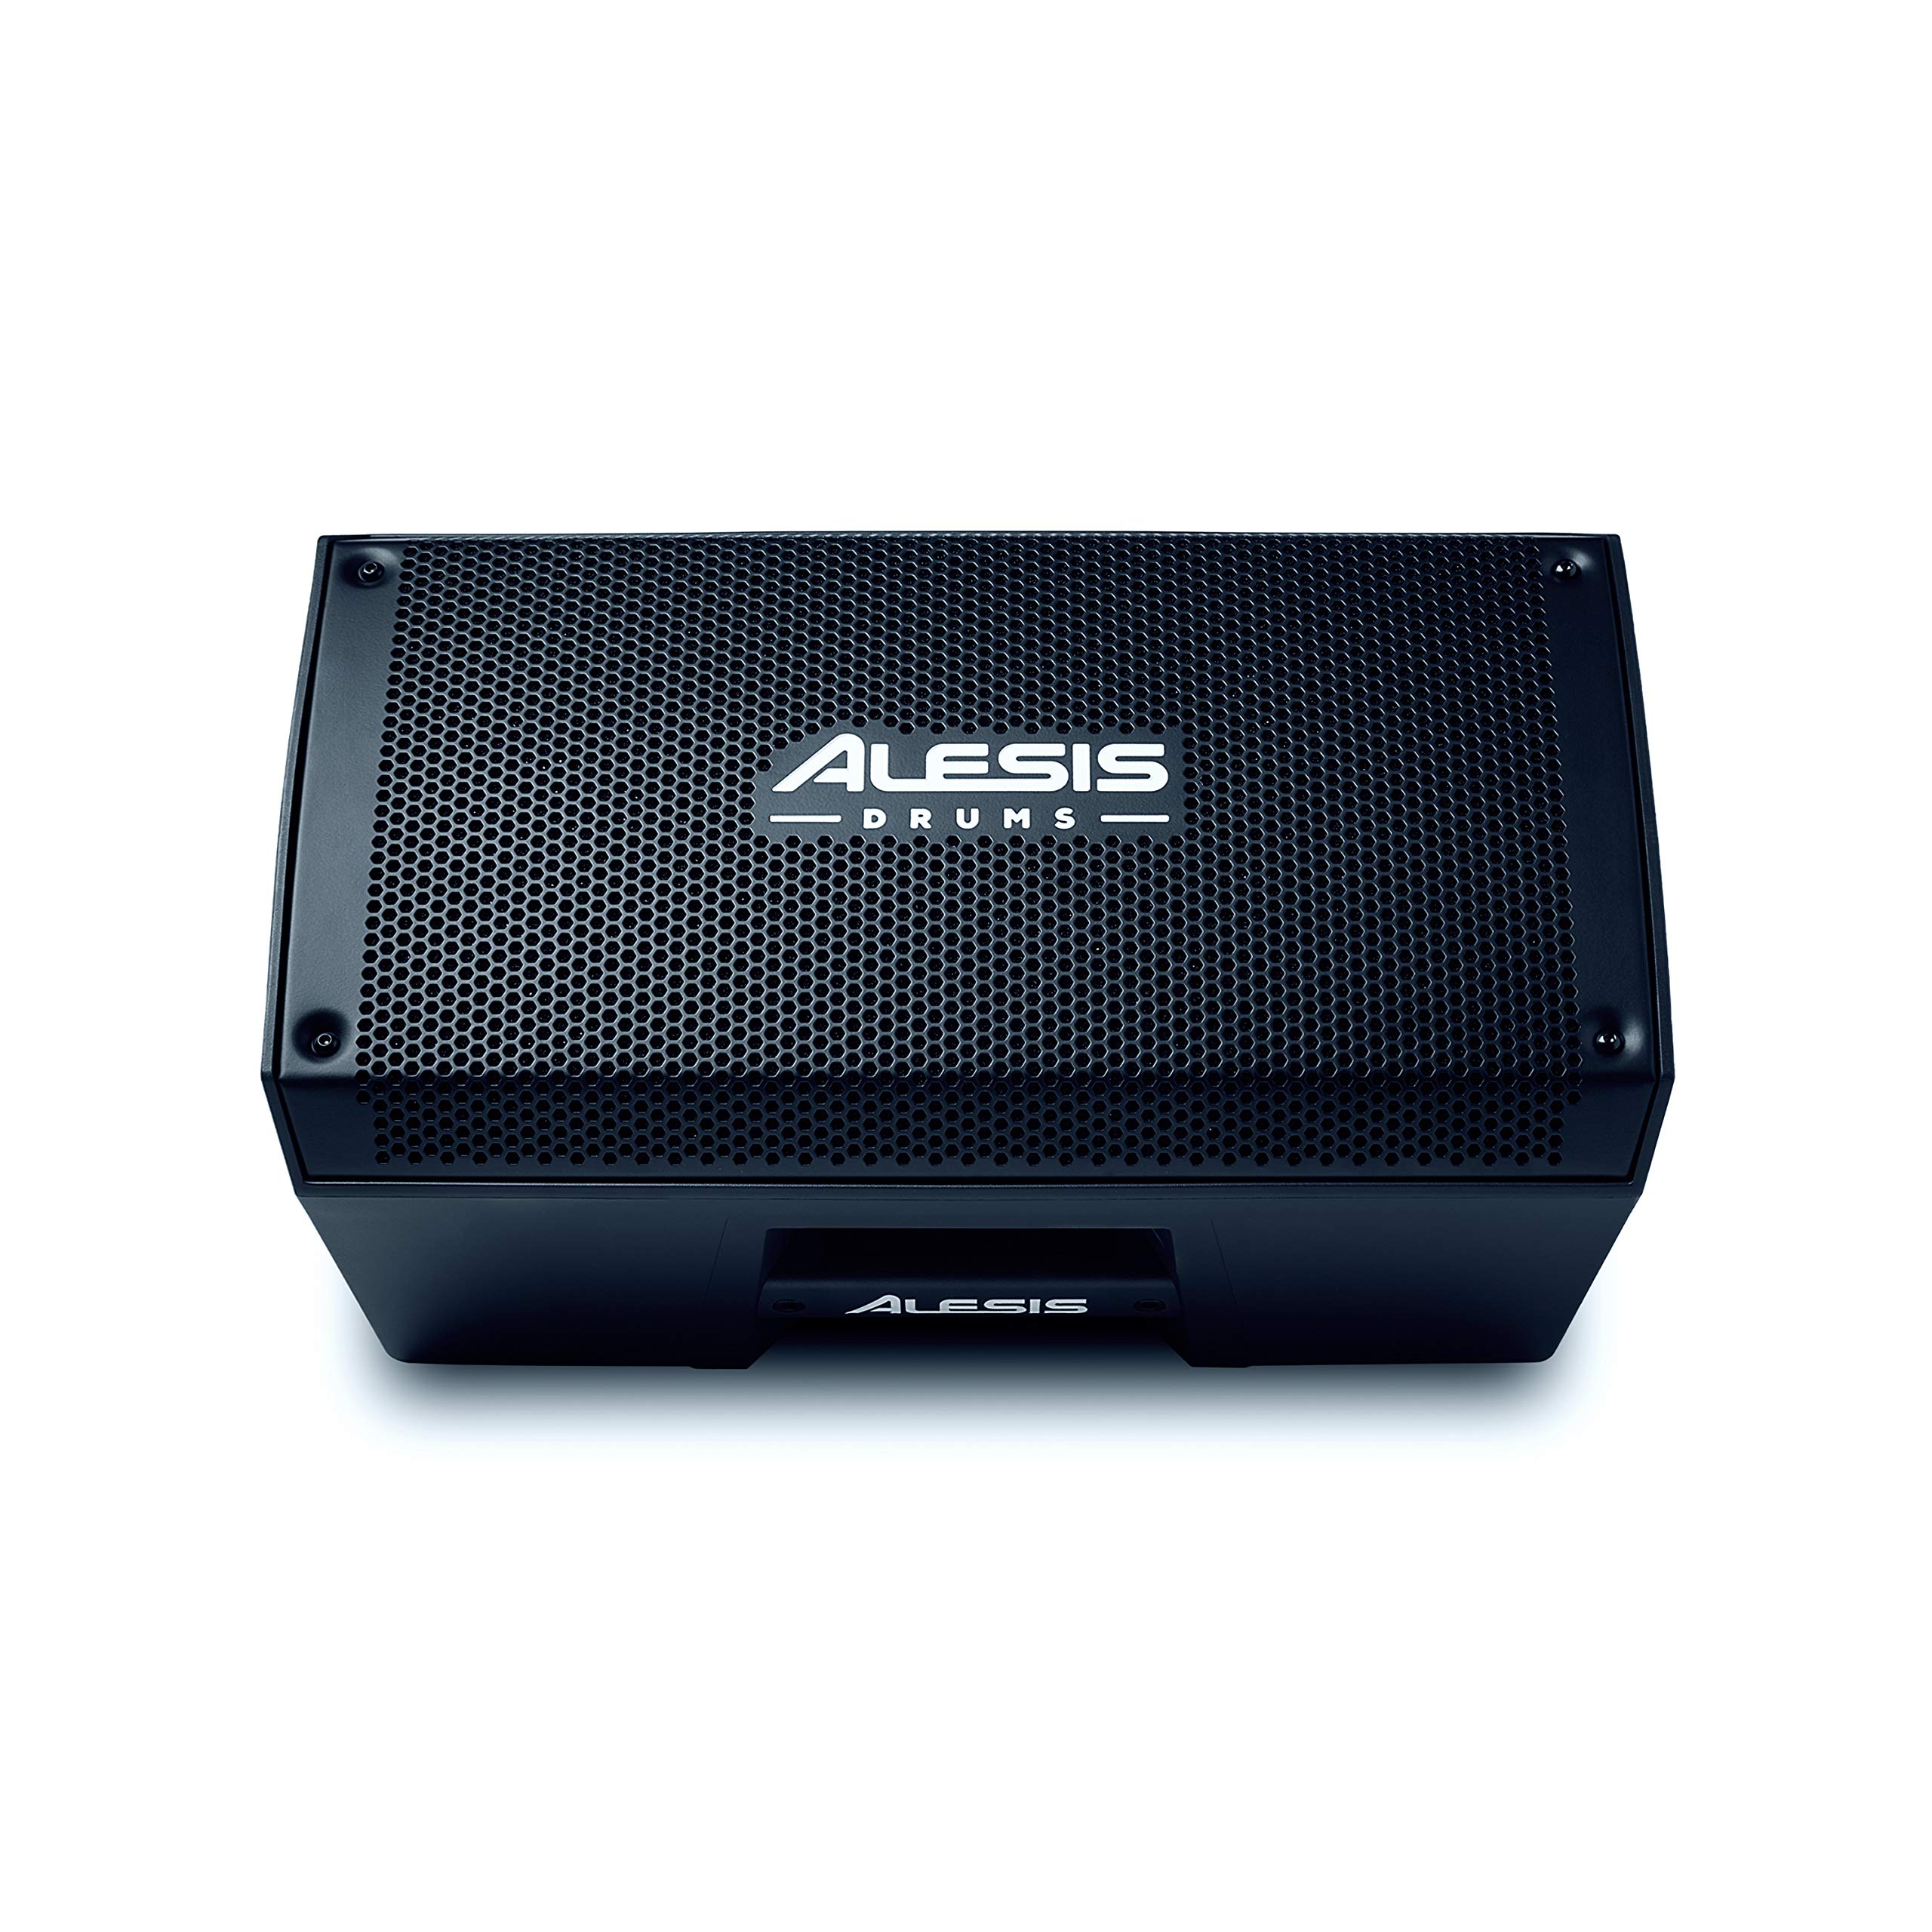  Alesis स्ट्राइक एम्प 8 | 8-इंच वूफर के साथ इलेक्ट्रॉनिक ड्रम किट के लिए 2000-वाट पोर्ट...